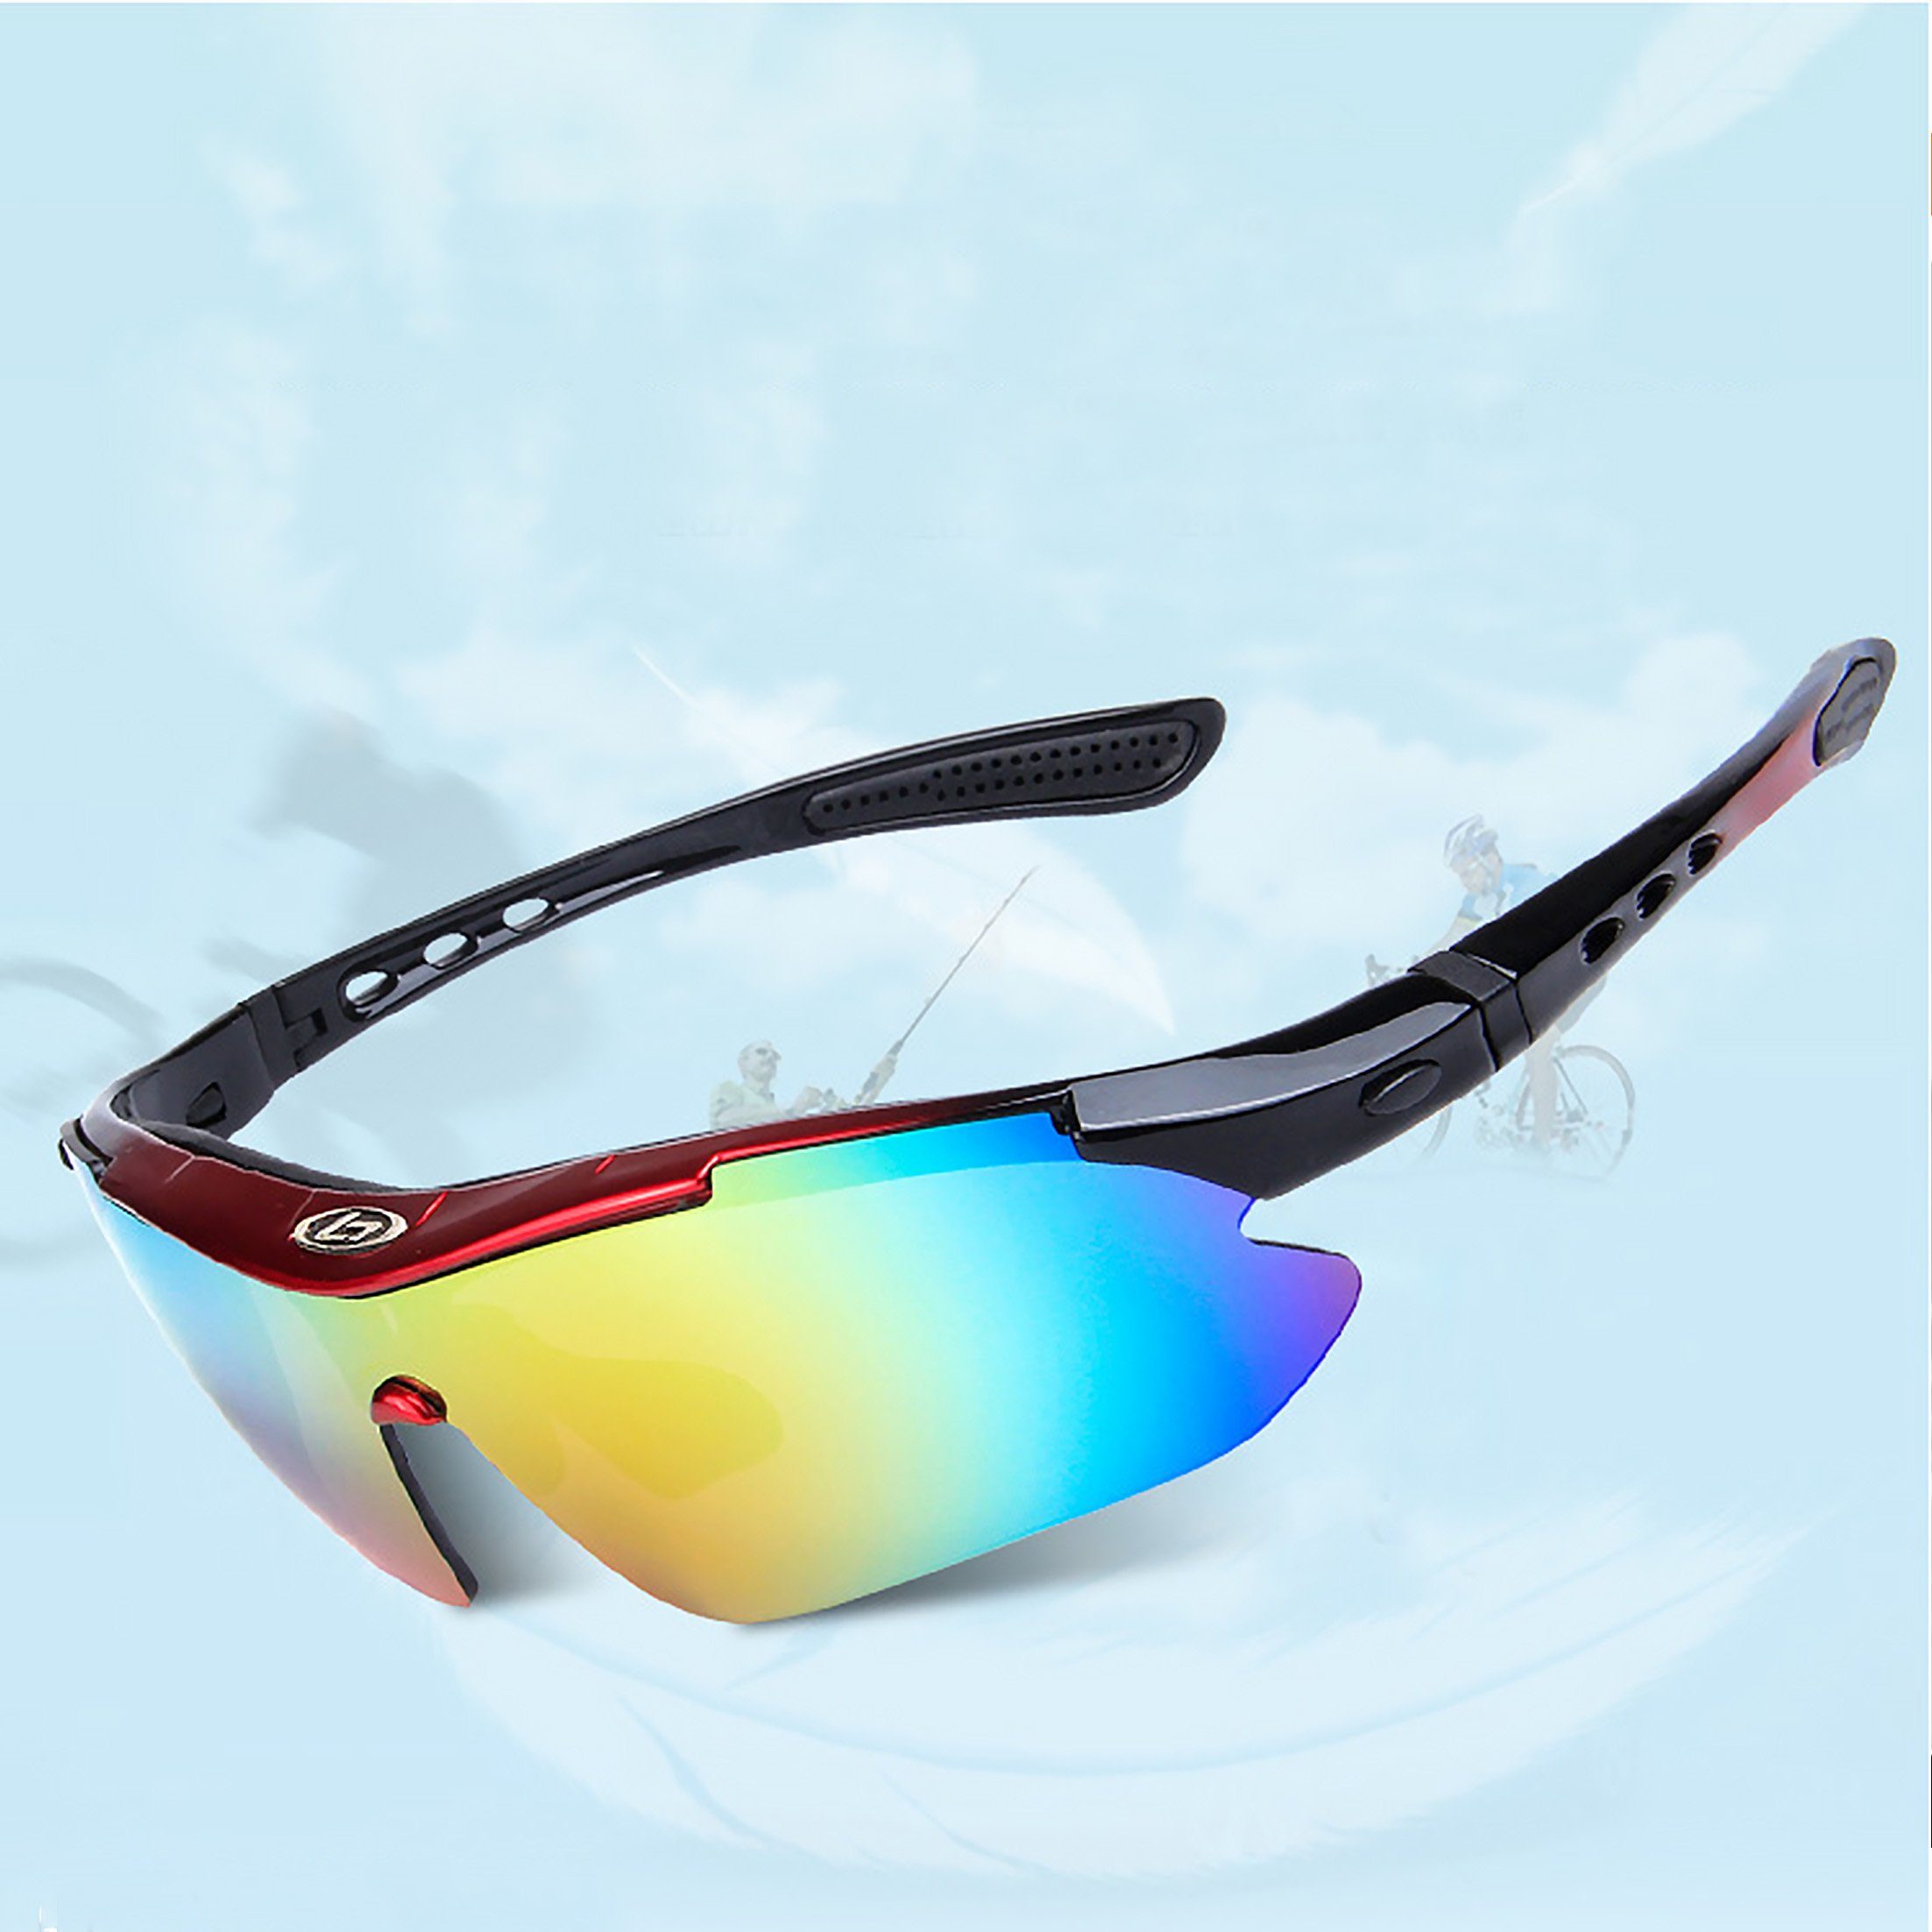 Sonnenbrille, Sportbrille, Fahrradbrille Radsportbrille, Männer Gläsern für 4 austauschbaren und Schwarz-glänzend Radsportbrille, mit KINSI Frauen UV-400-Schutz polarisierte